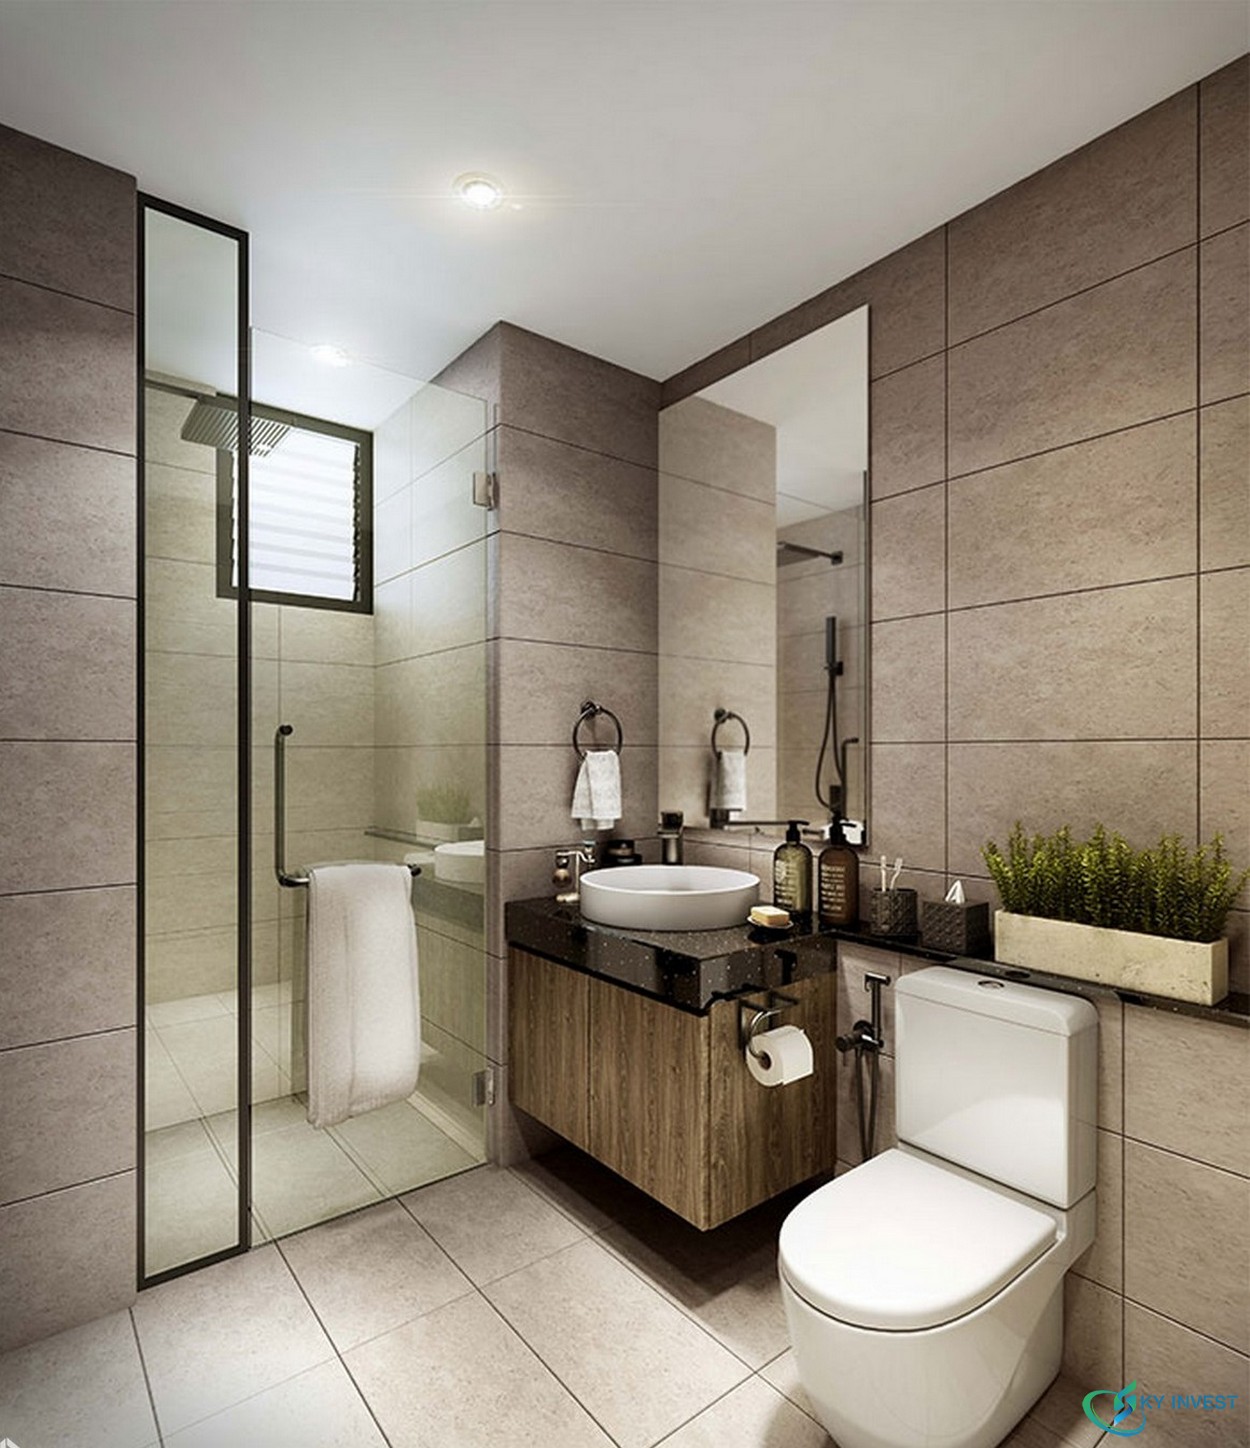 Thiết kế phòng tắm căn hộ mẫu dự án Define Quận 2